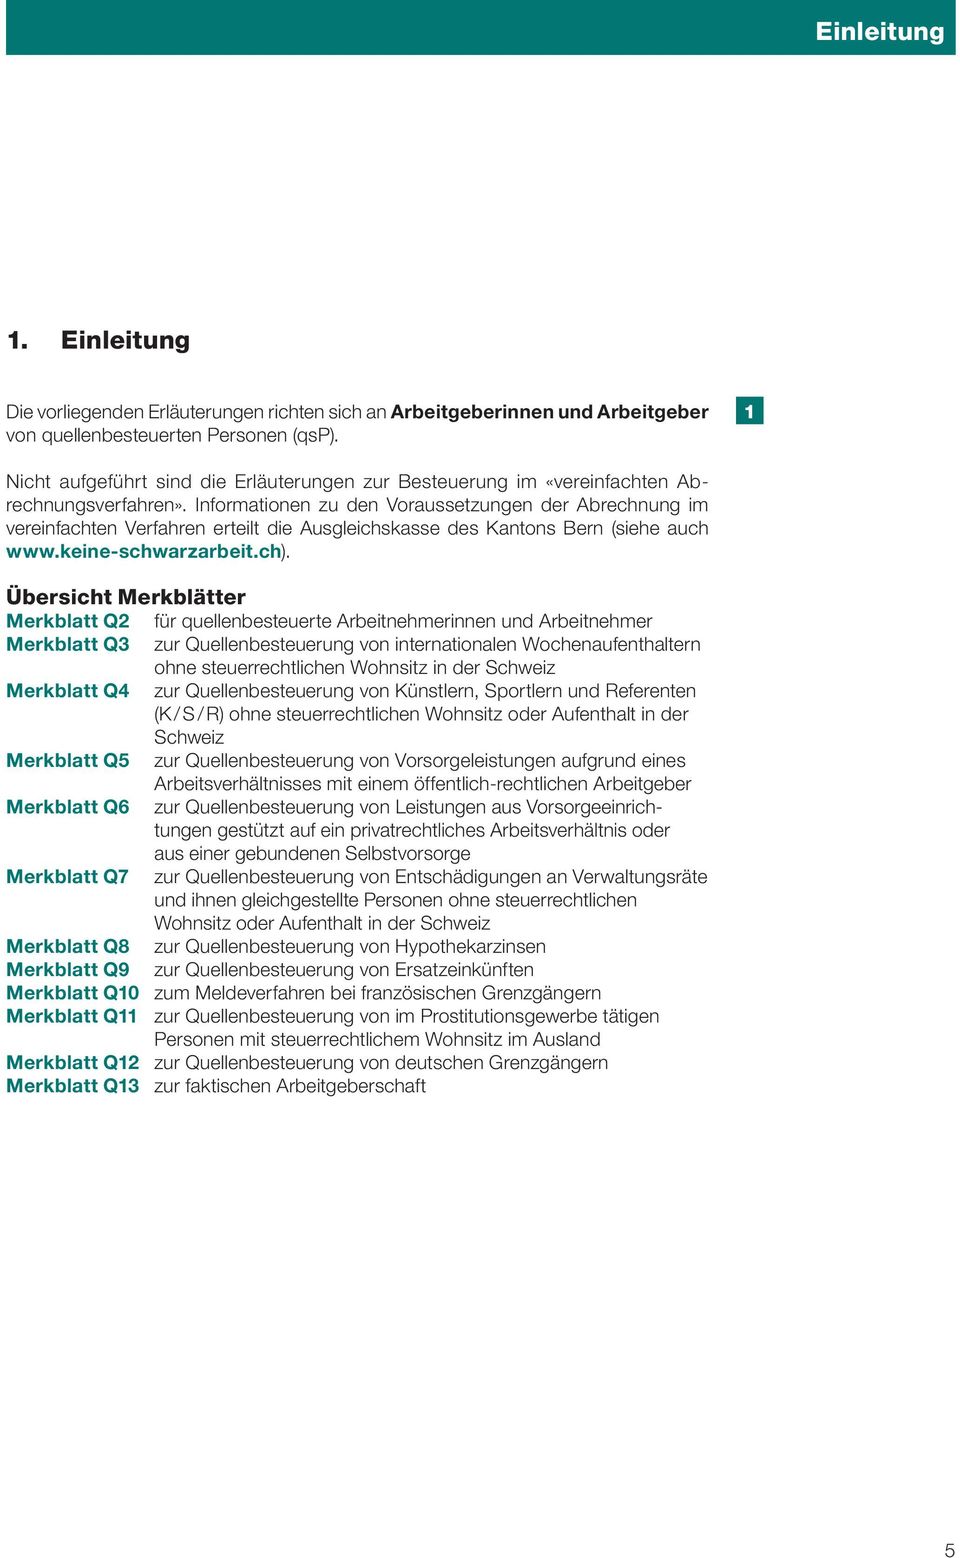 Informationen zu den Voraussetzungen der Abrechnung im vereinfachten Verfahren erteilt die Ausgleichskasse des Kantons Bern (siehe auch www.keine-schwarzarbeit.ch).